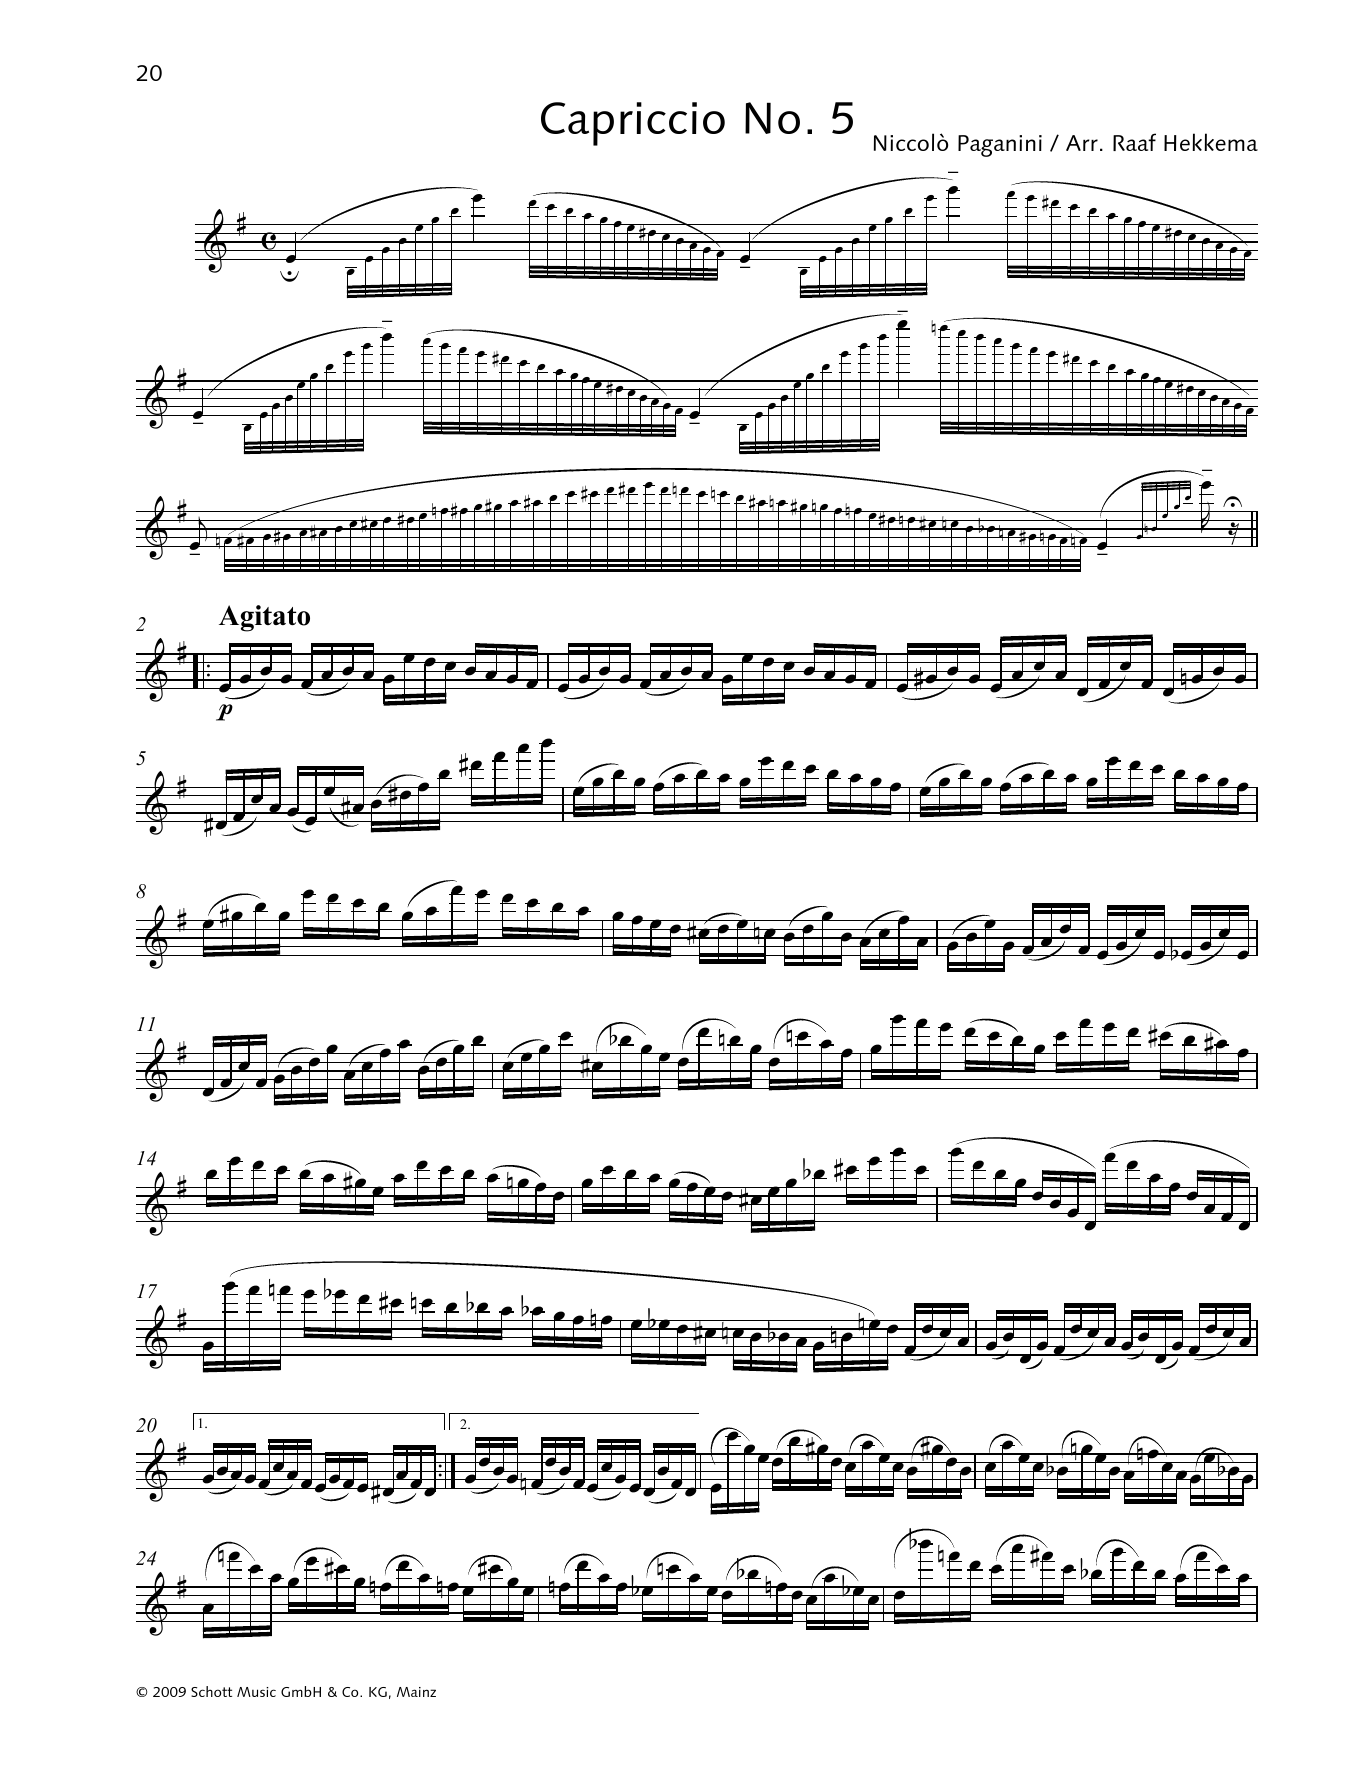 Download Niccolo Paganini Capriccio No. 5 Sheet Music